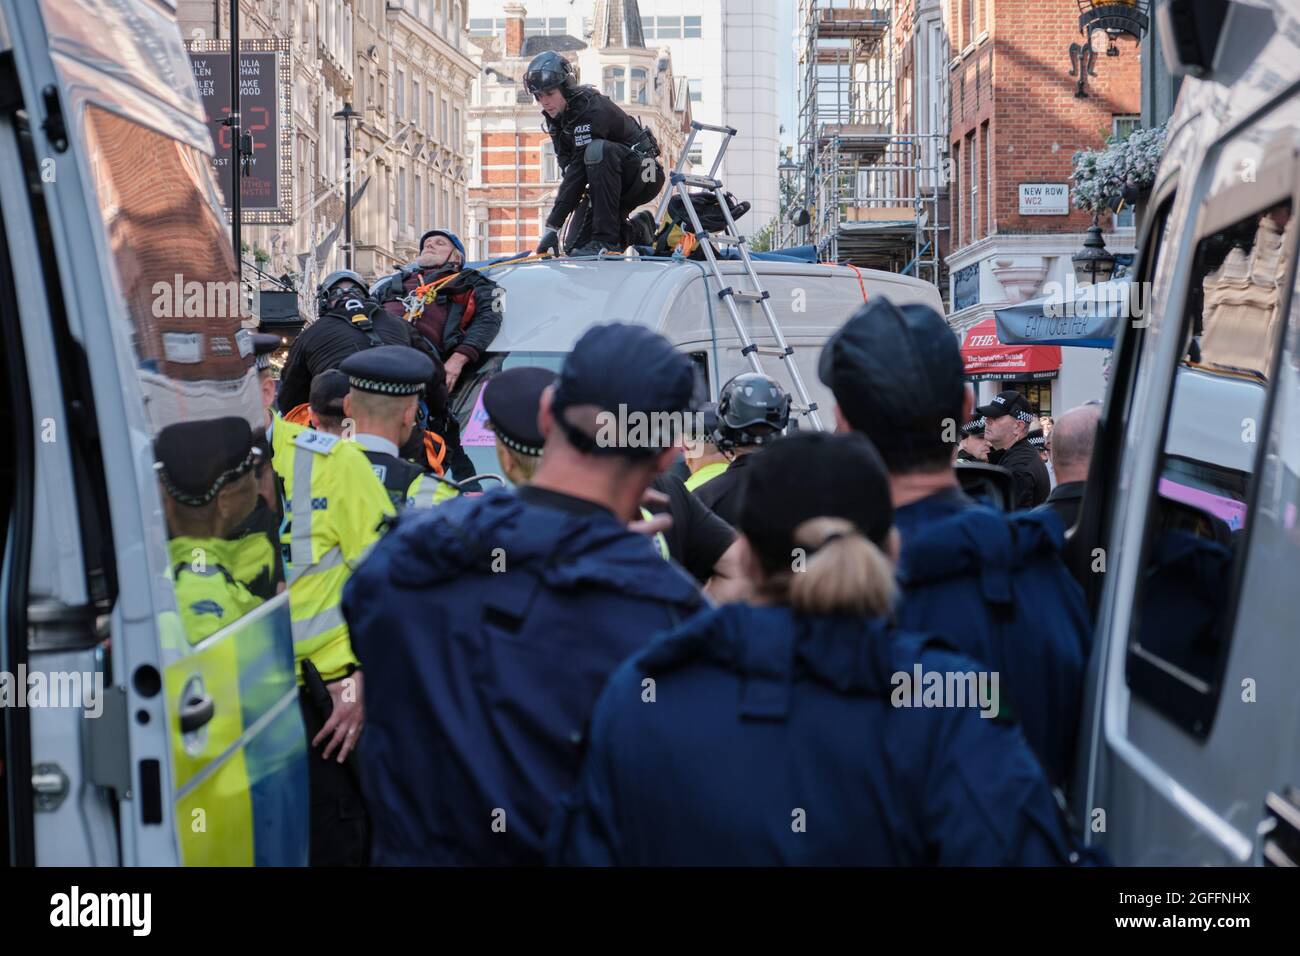 LONDON, GROSSBRITANNIEN. Die Polizei der öffentlichen Ordnung arbeitet für die Befreiung von Extinction Rebellion-Aktivisten, die sich an einen Lieferwagen gekettet haben. Bild: Chiara Fabbro Stockfoto